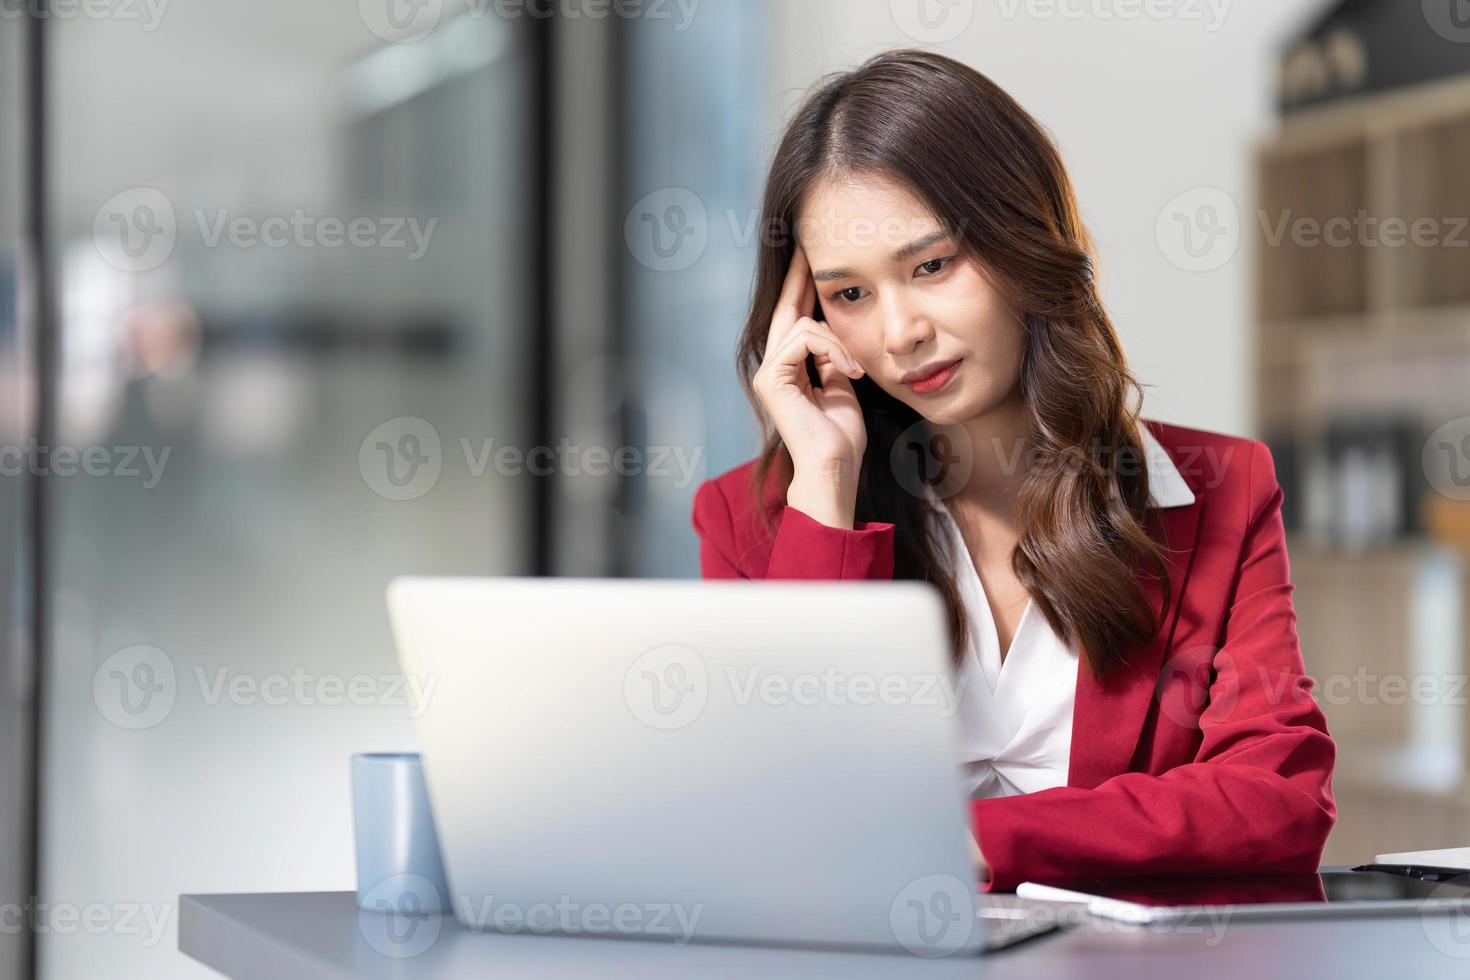 mulher asiática pensando muito preocupada com a solução de problemas on-line olhando para a tela do laptop, preocupada empresária asiática séria focada em resolver tarefa difícil de computador de trabalho foto